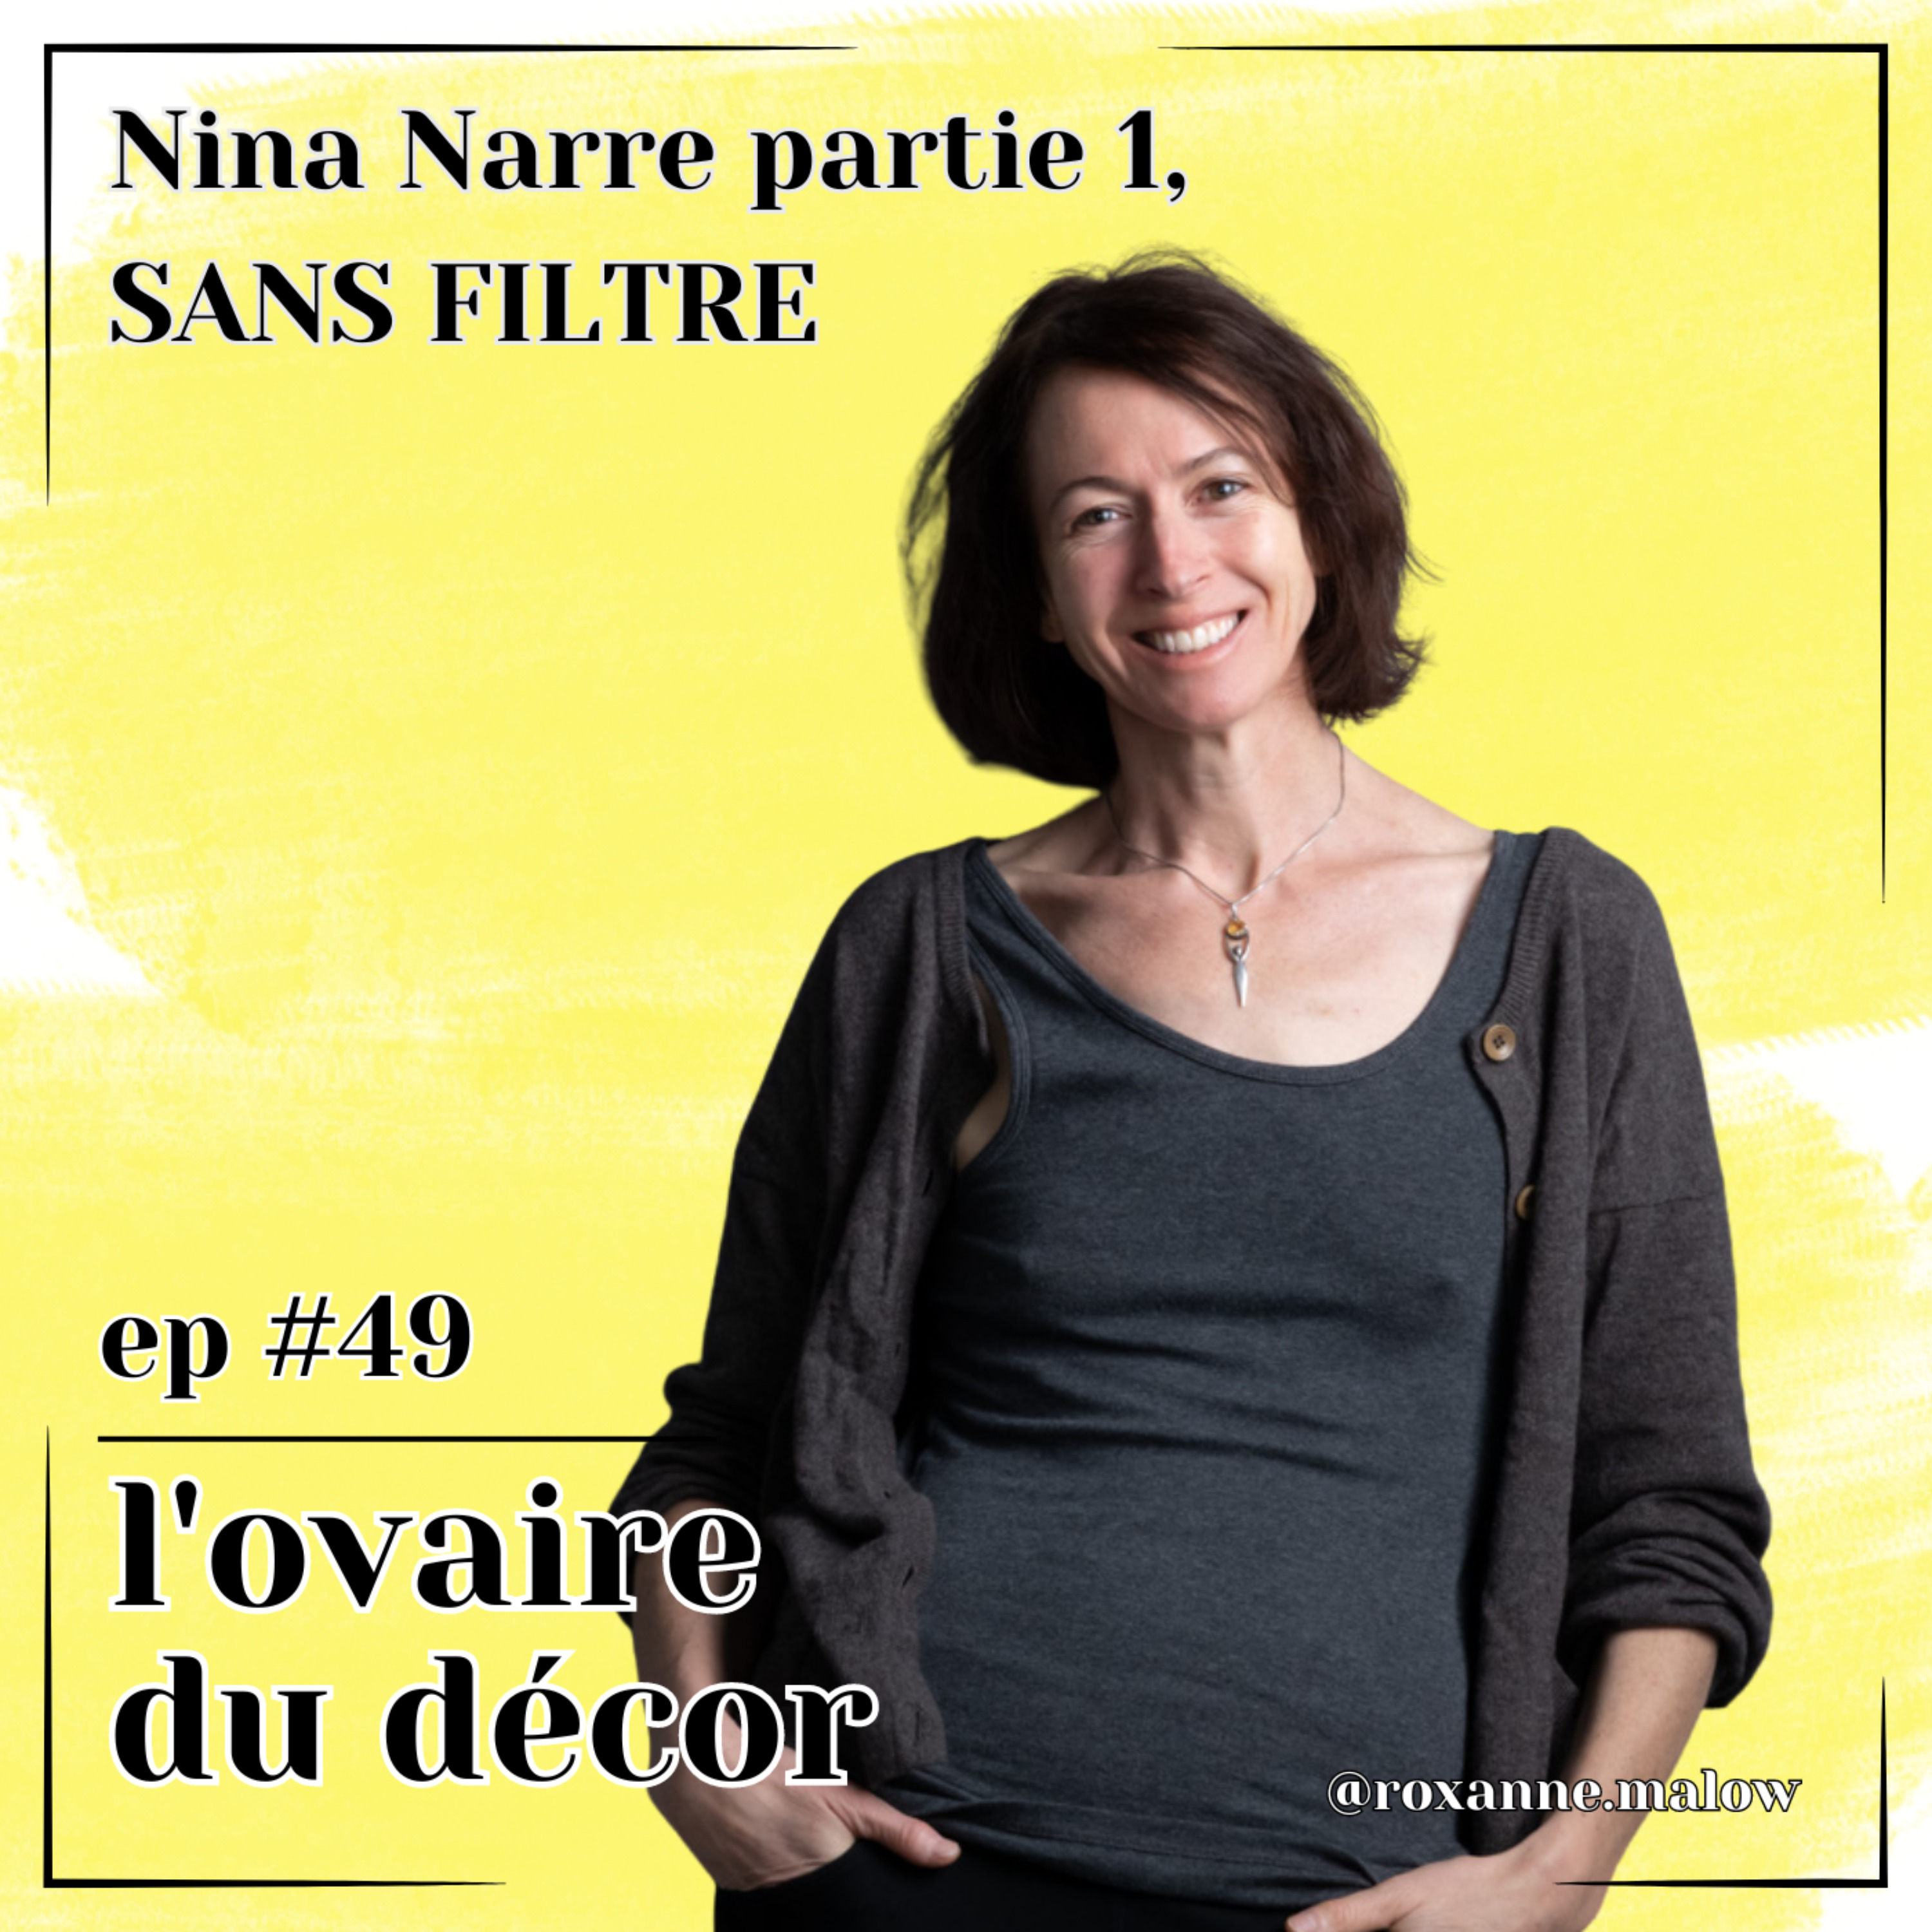 cover art for Ep #49 Nina Narre, 1ère partie SANS FILTRE